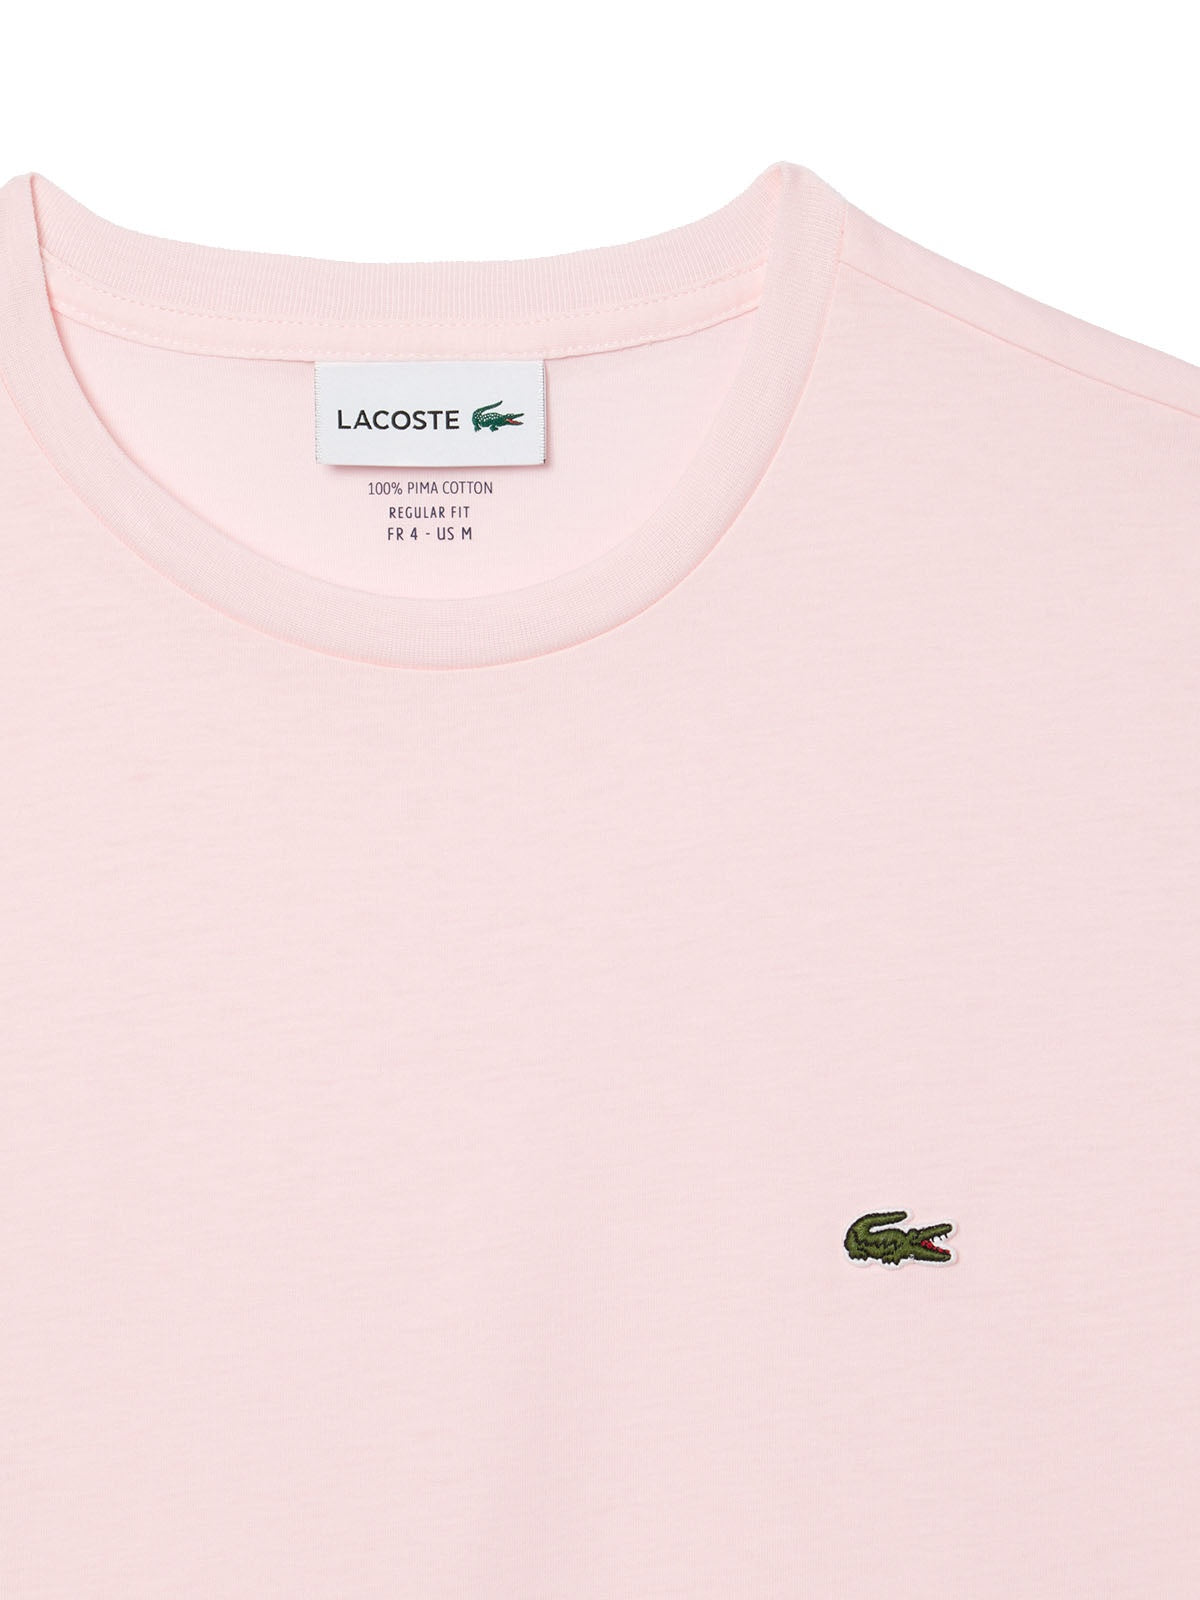 T-shirt Uomo Lacoste - T-Shirt A Girocollo In Jersey Di Cotone Pima - Rosa